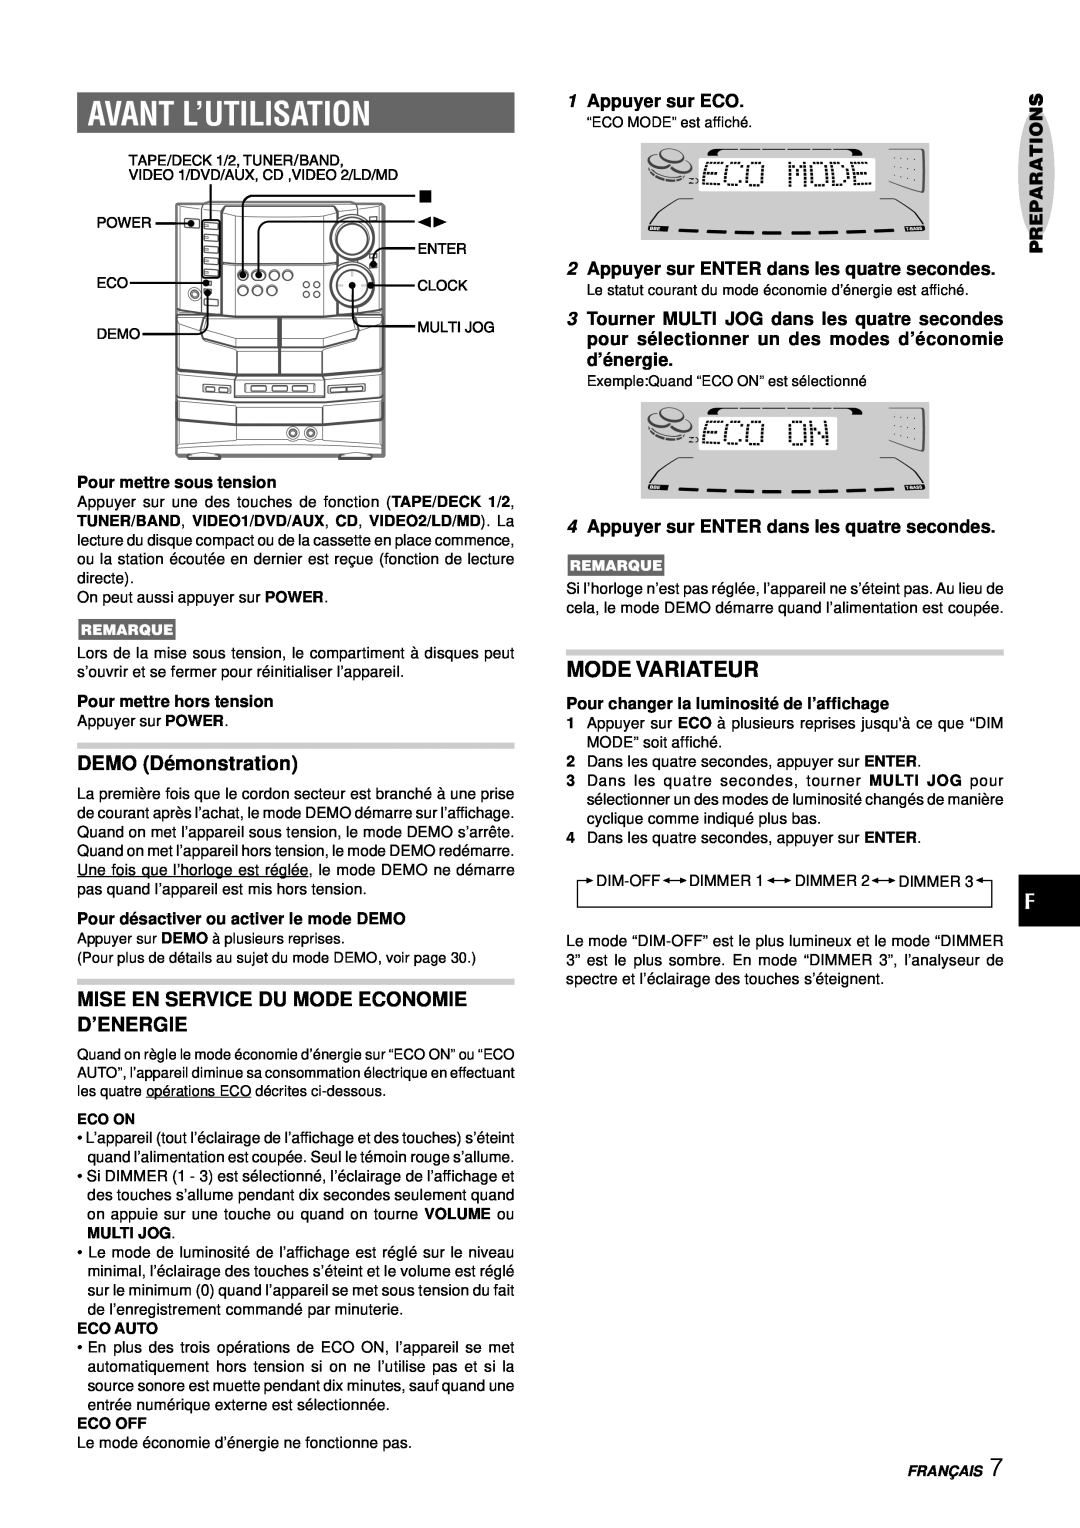 Aiwa NSX-DS8 manual Avant L’Utilisation, Mode Variateur, DEMO Dé monstration, Mise En Service Du Mode Economie D’Energie 